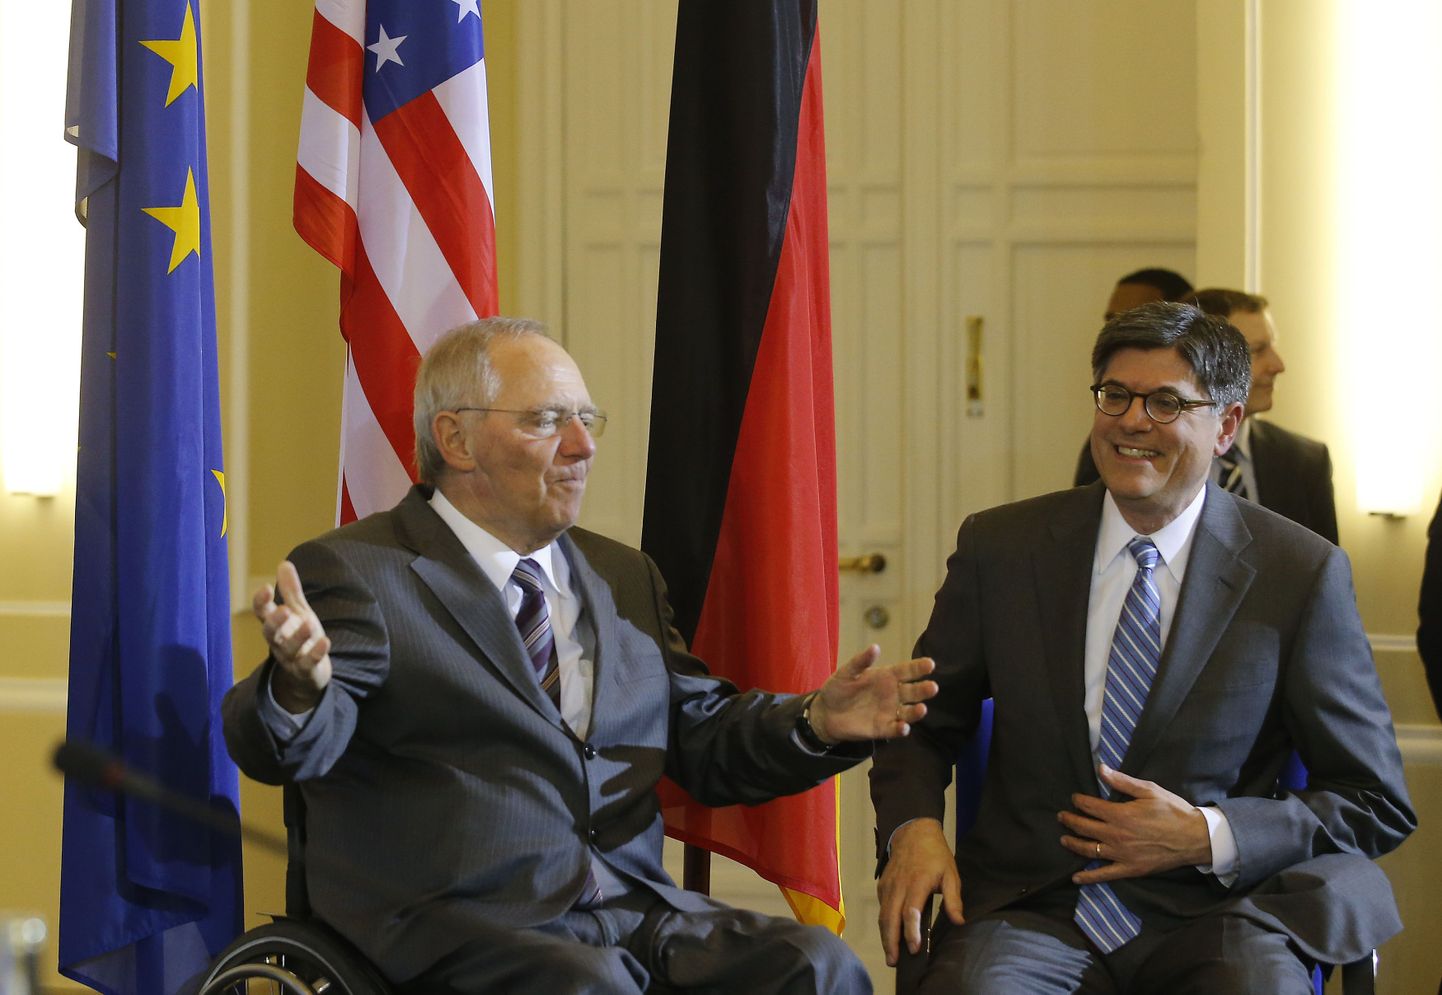 USA uus rahandusminister Jack Lew ütles visiidil Saksamaale, et korras rahandusega riigid peaksid stimuleerima sisenõudlust. Pildil Saksamaa rahandusminister Wolfgang Schaeuble (vaskul) ja Jack Lew.